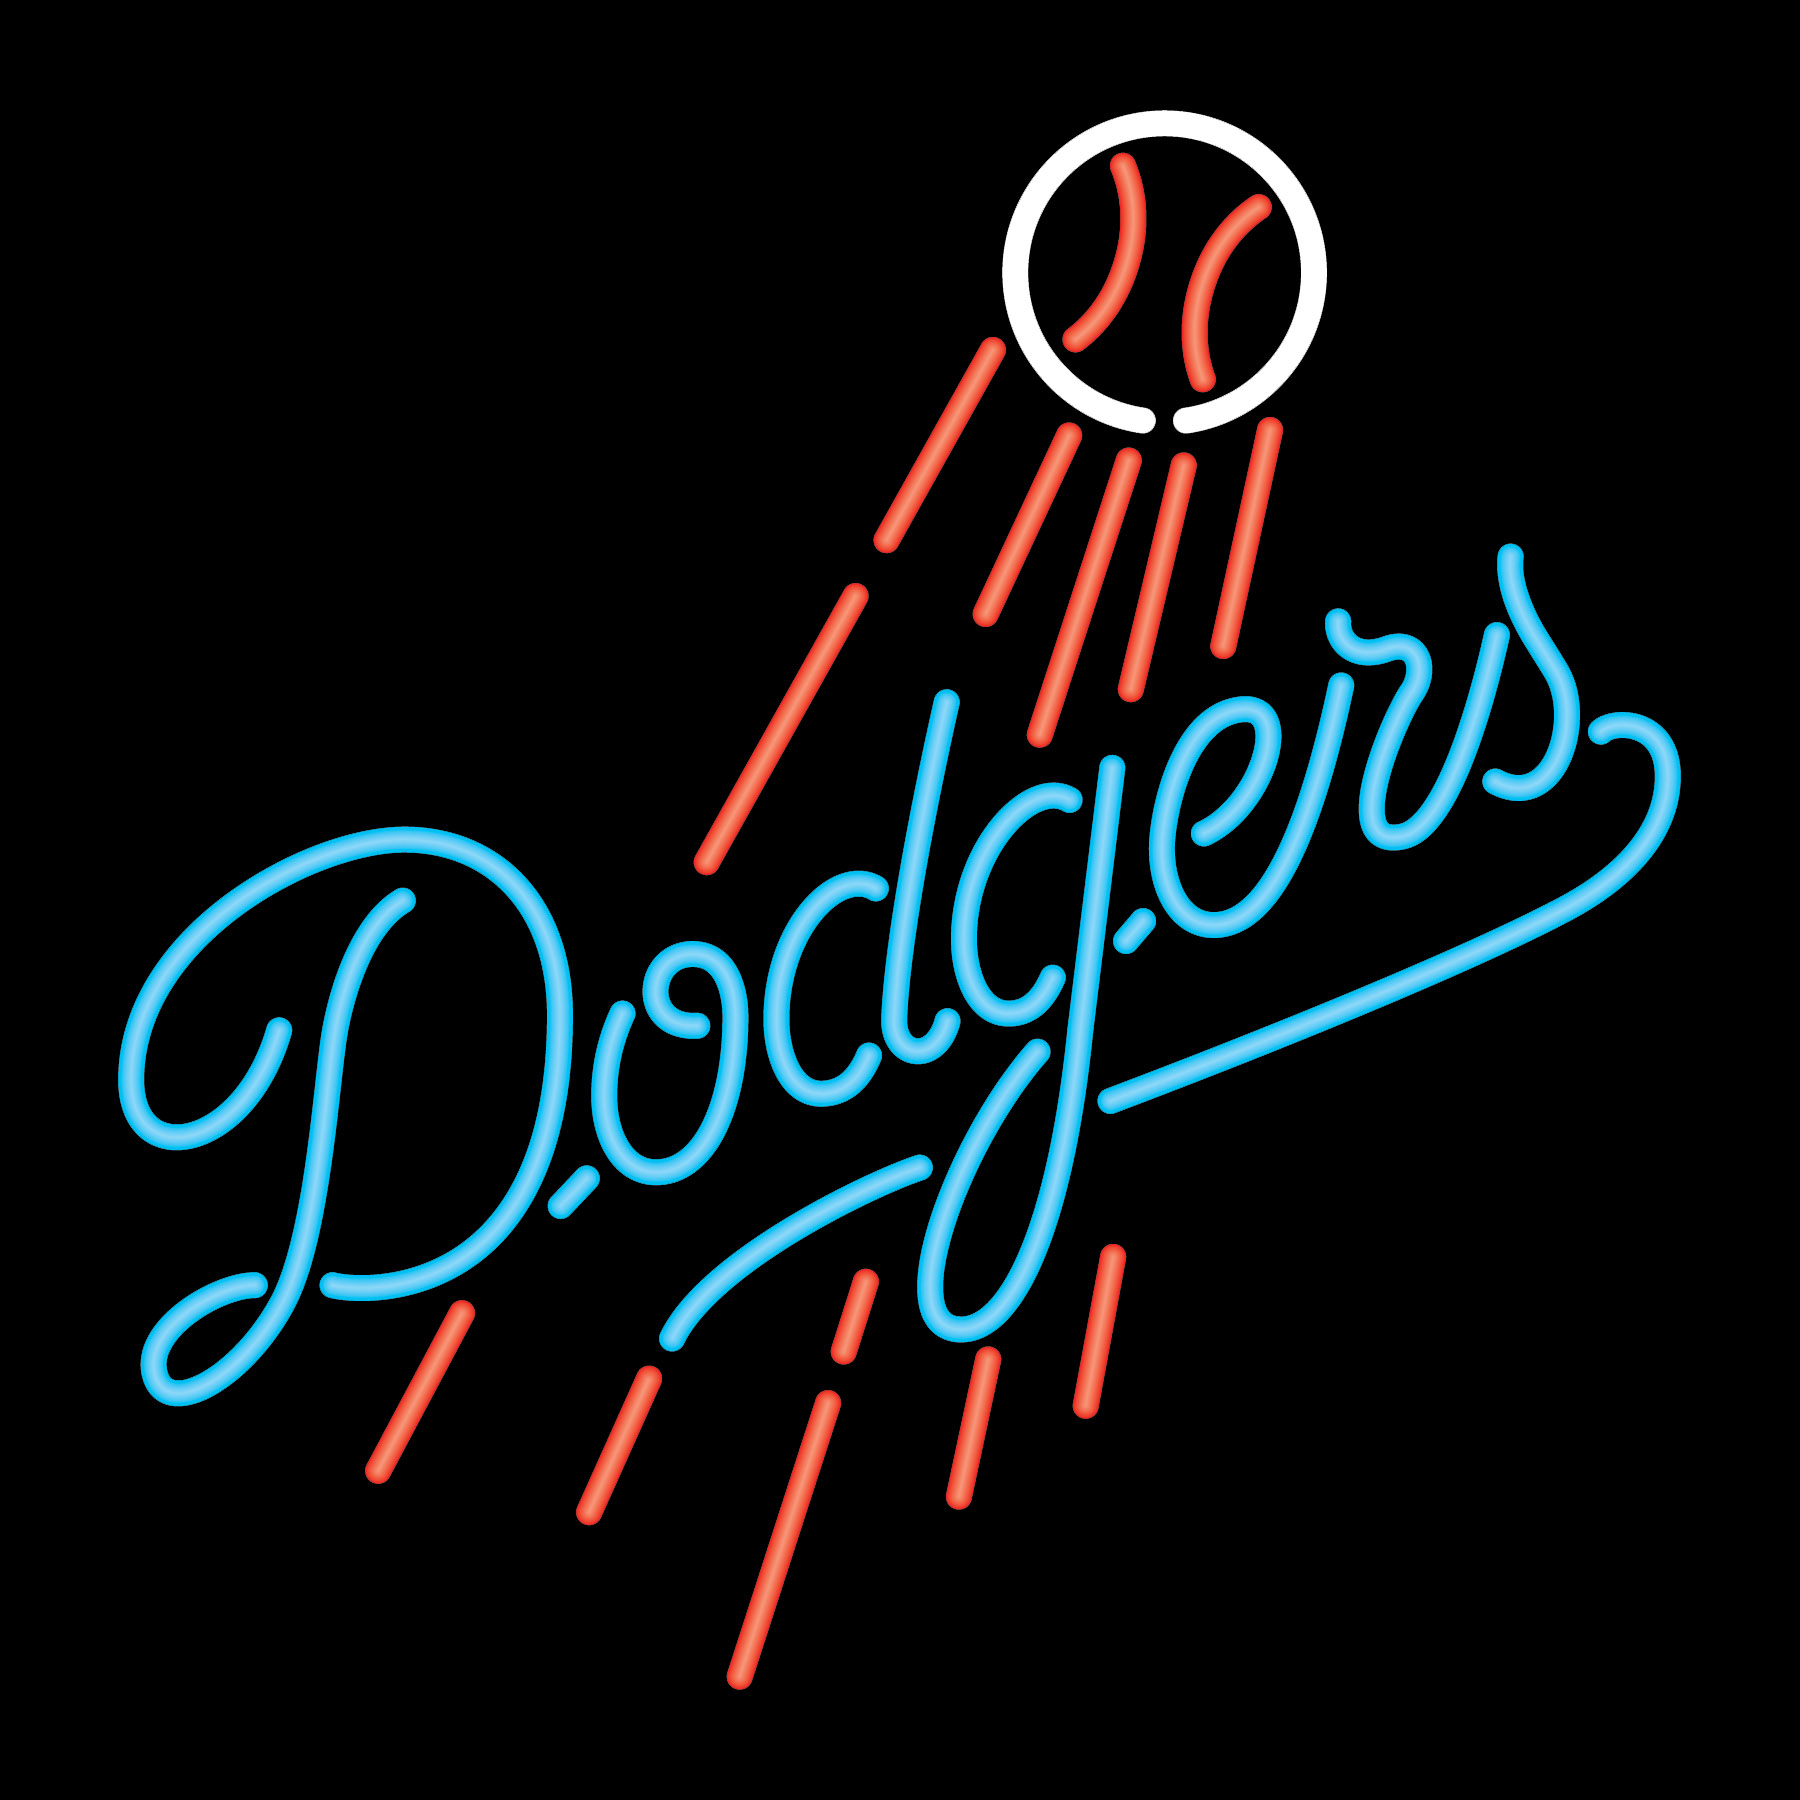 LA Dodgers iPhone Wallpaper - WallpaperSafari